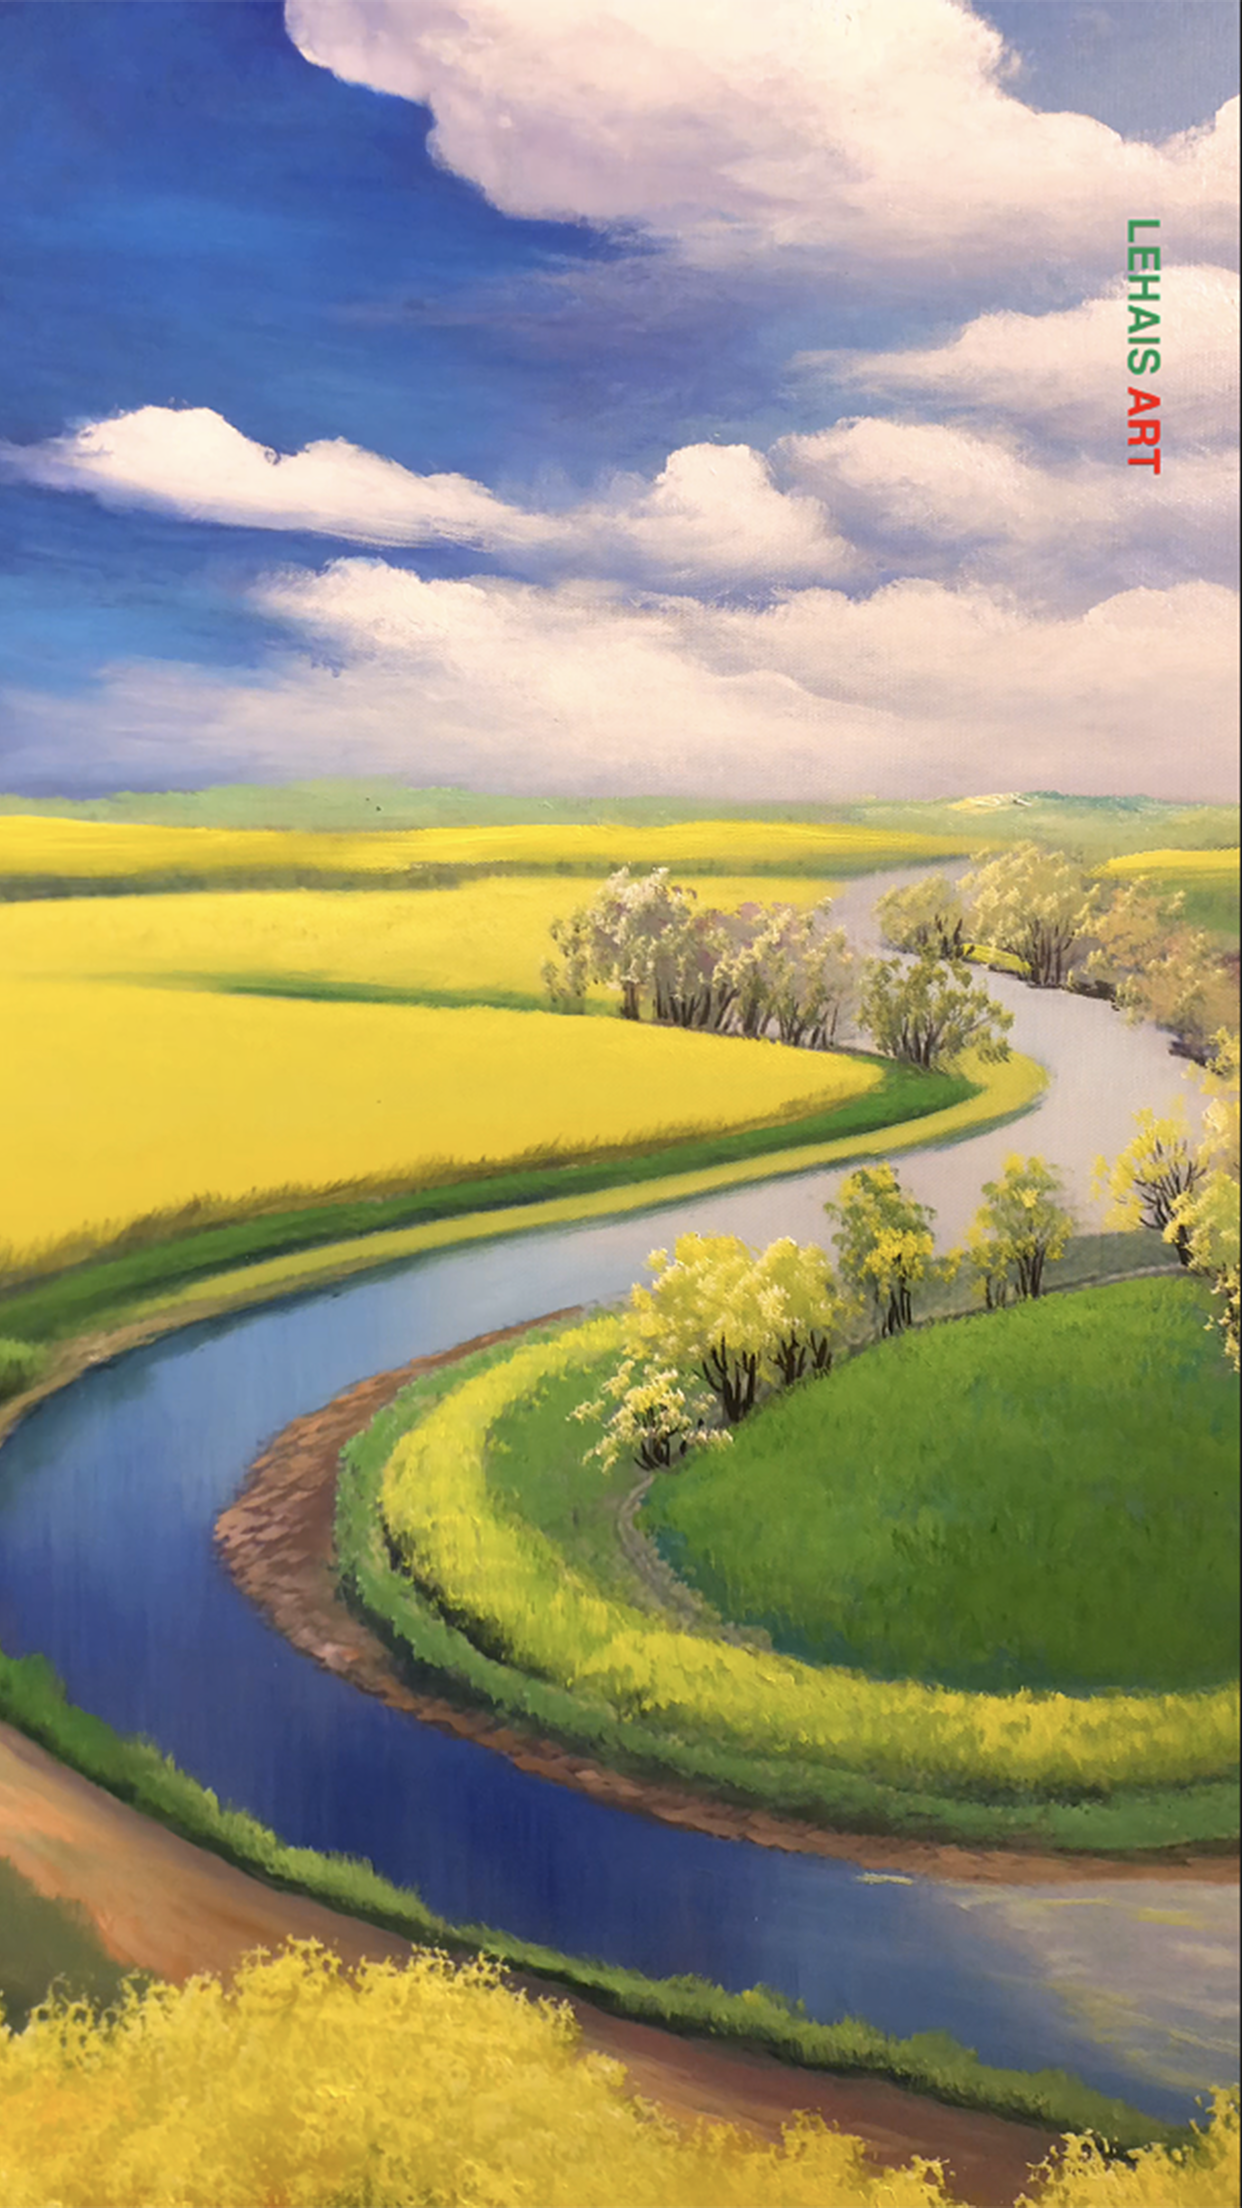 Dòng sông thơ mộng trong bức tranh sơn dầu đồng quê